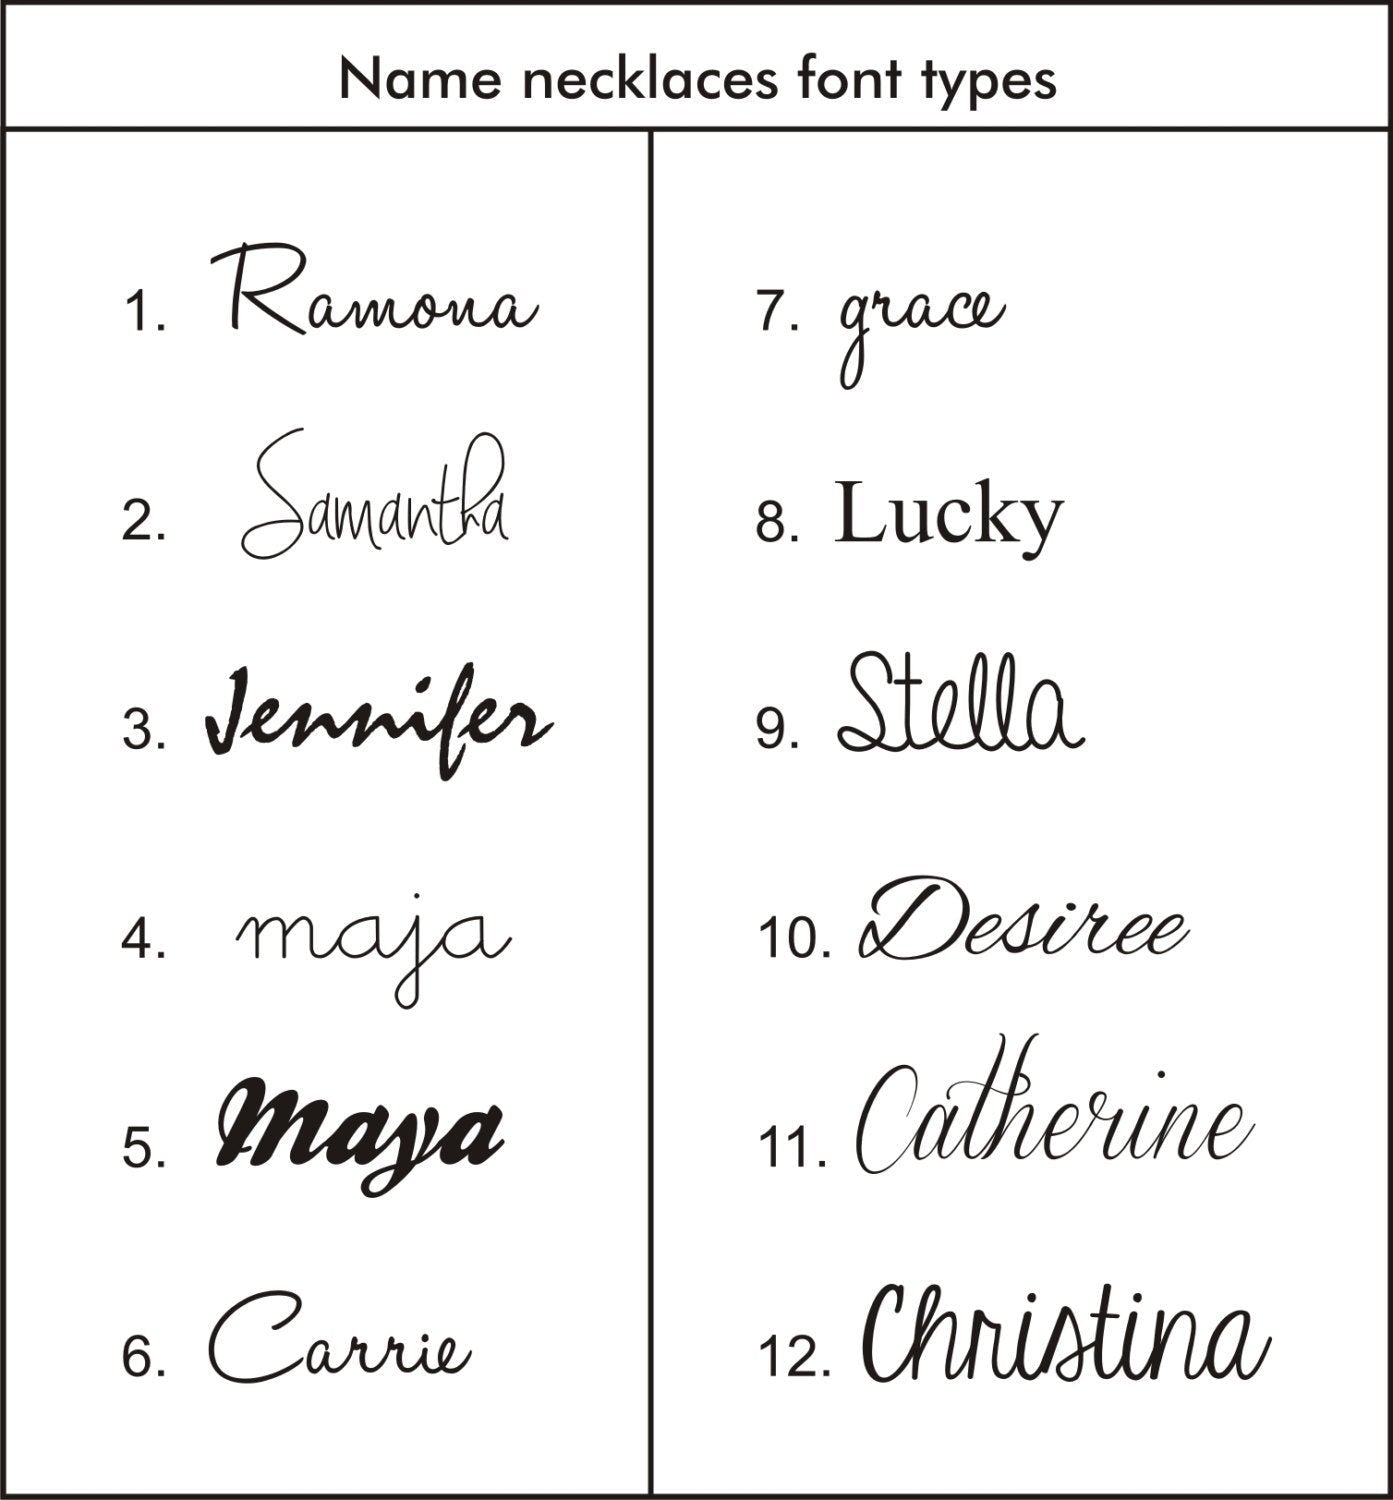 Font types